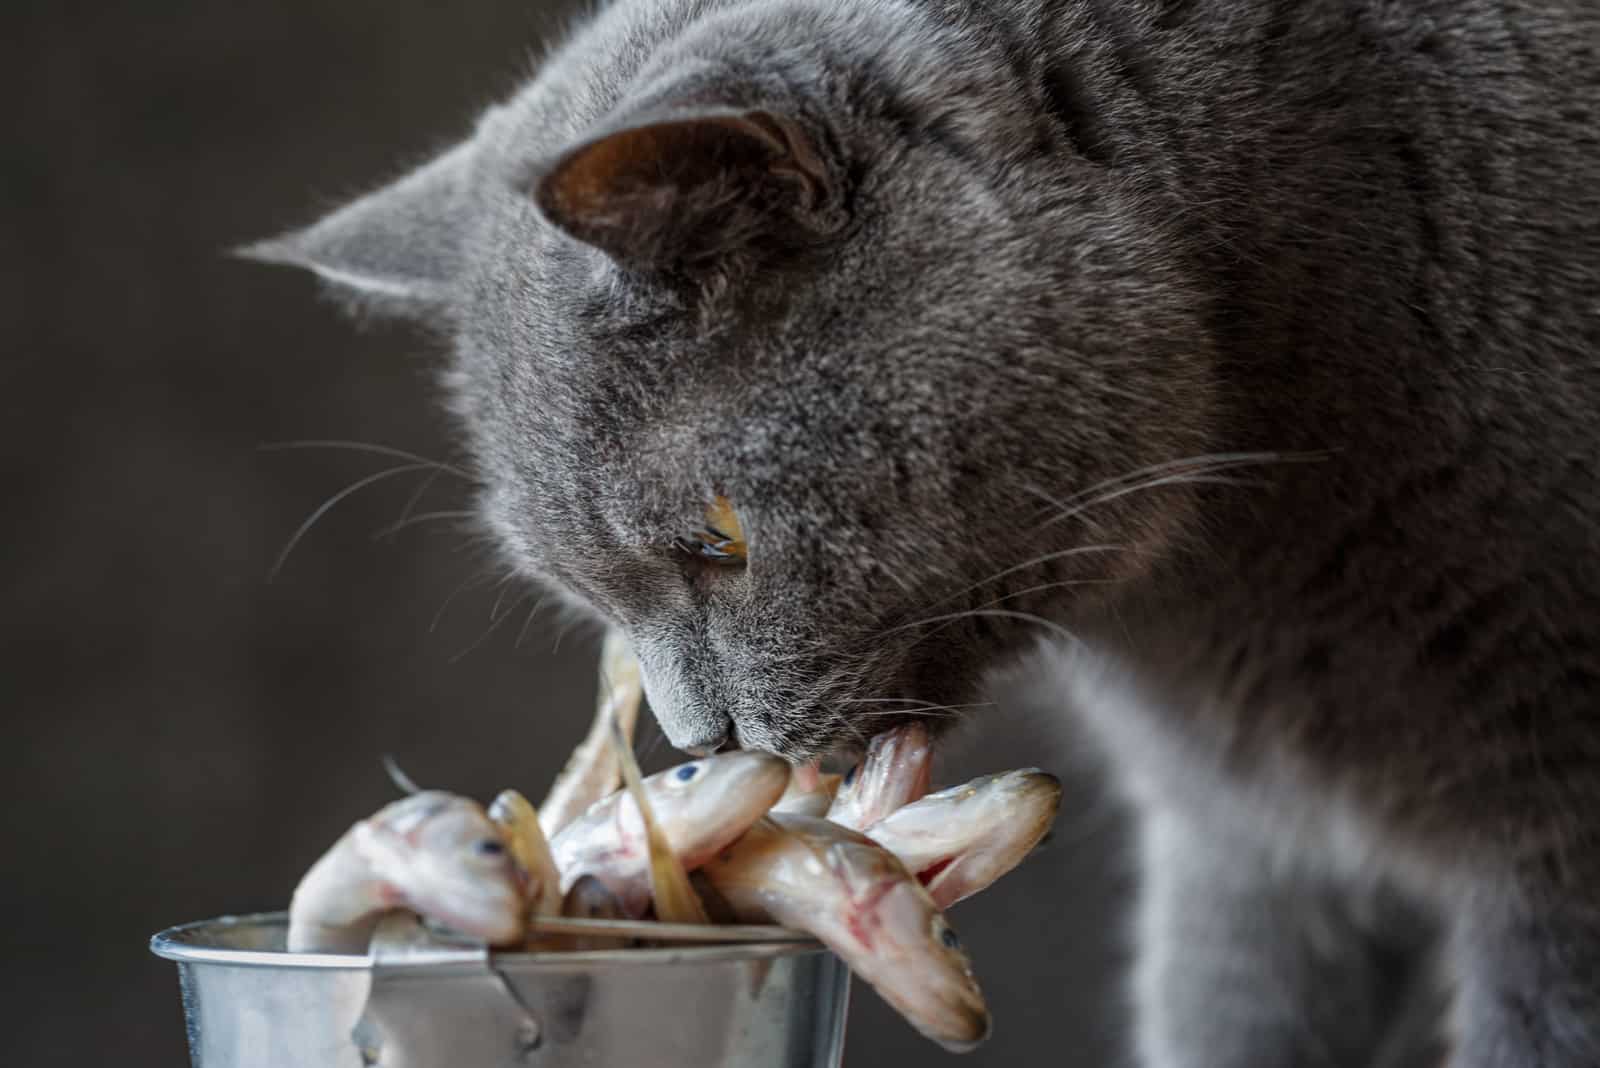 Cat looking at raw fish